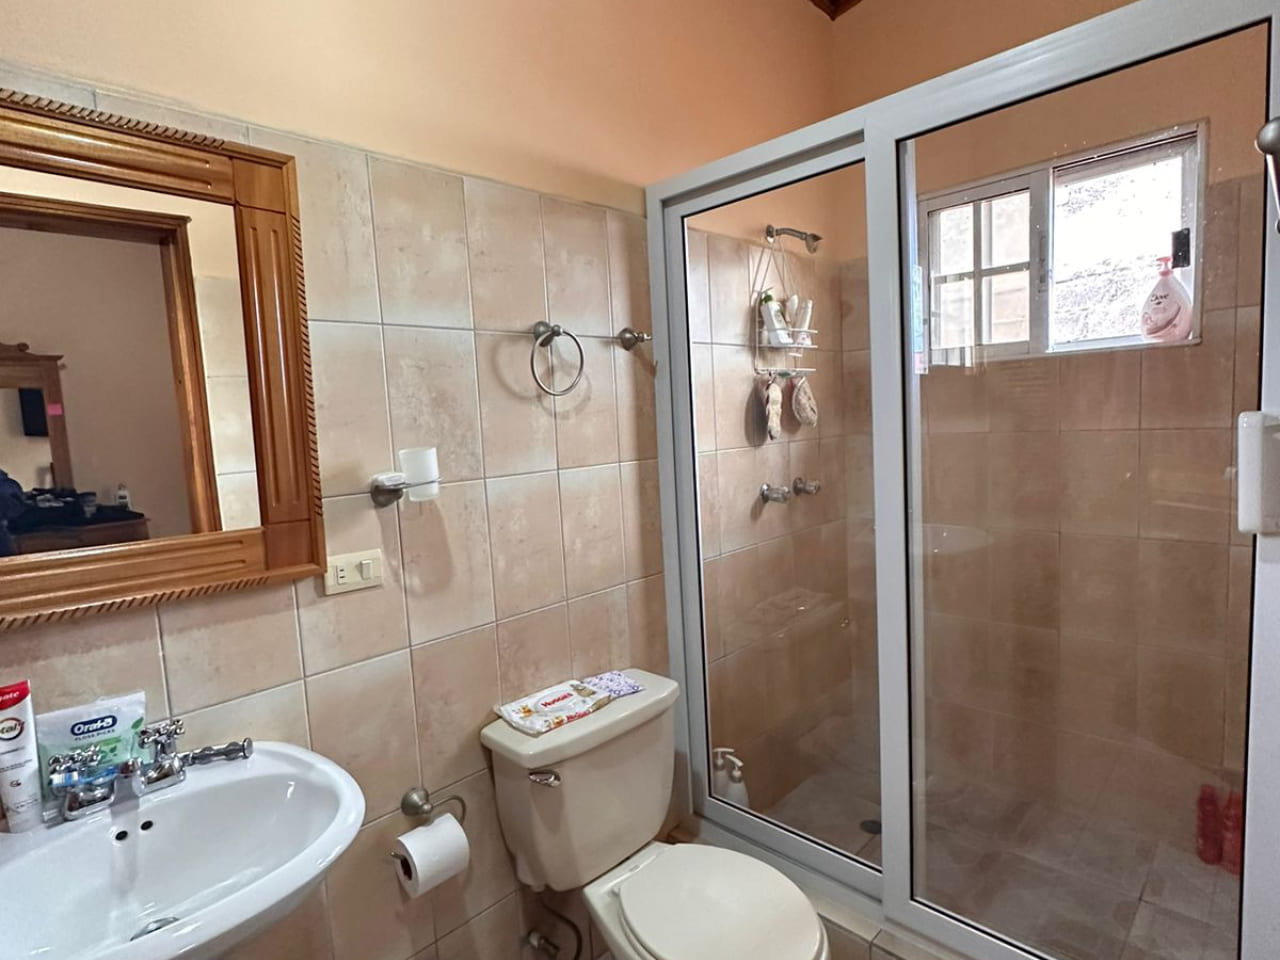 Área de baño con regadera protegida por puera de vidrio deslizable, servicio y lavamanos de color blanco a juego.